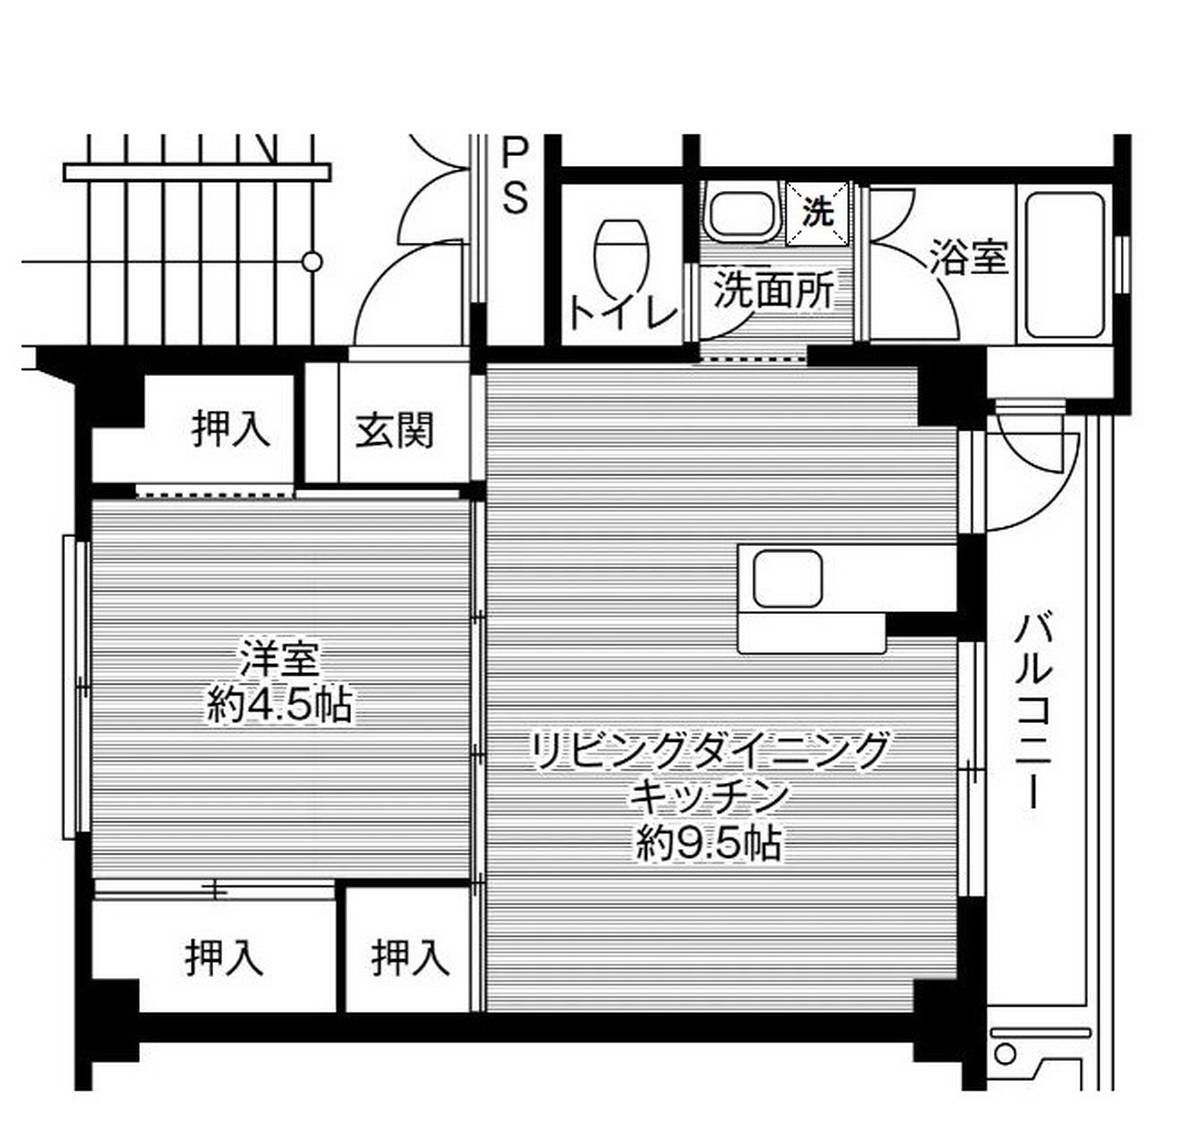 Sơ đồ phòng 1LDK của Village House Miyagasako ở Kure-shi